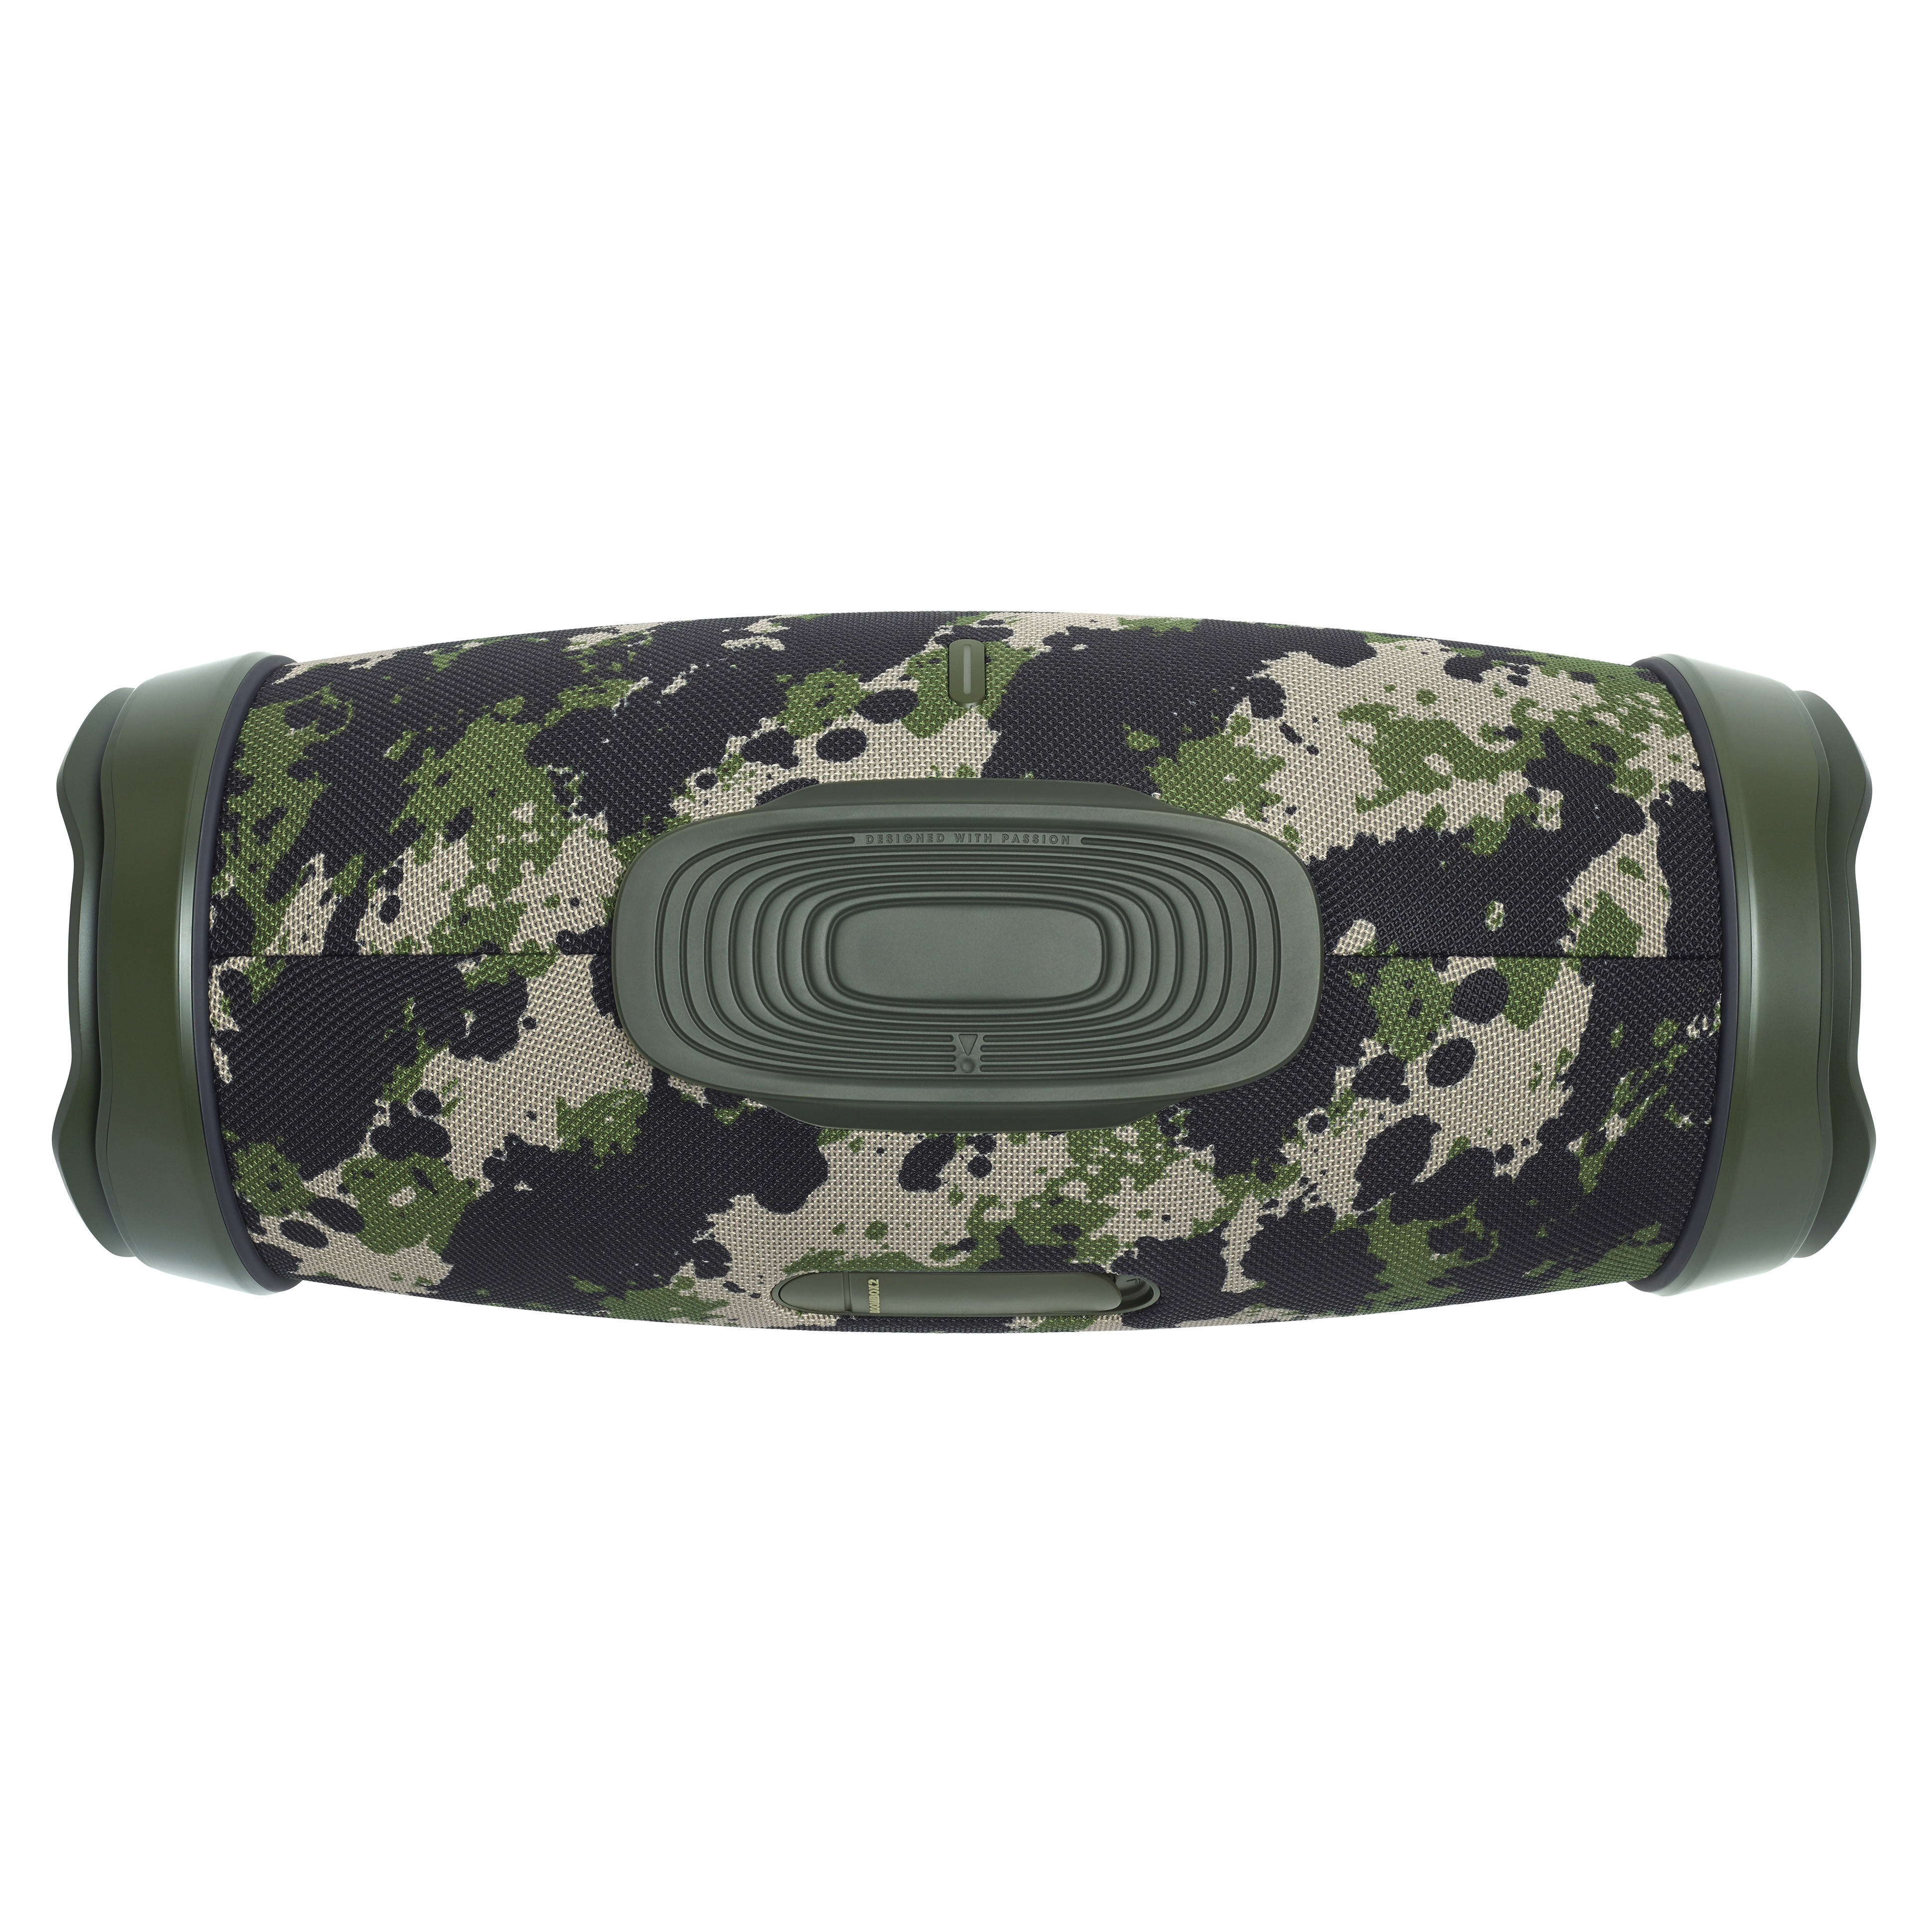 2 Boombox JBL Mehrfarbig Bluetooth Lautsprecher,